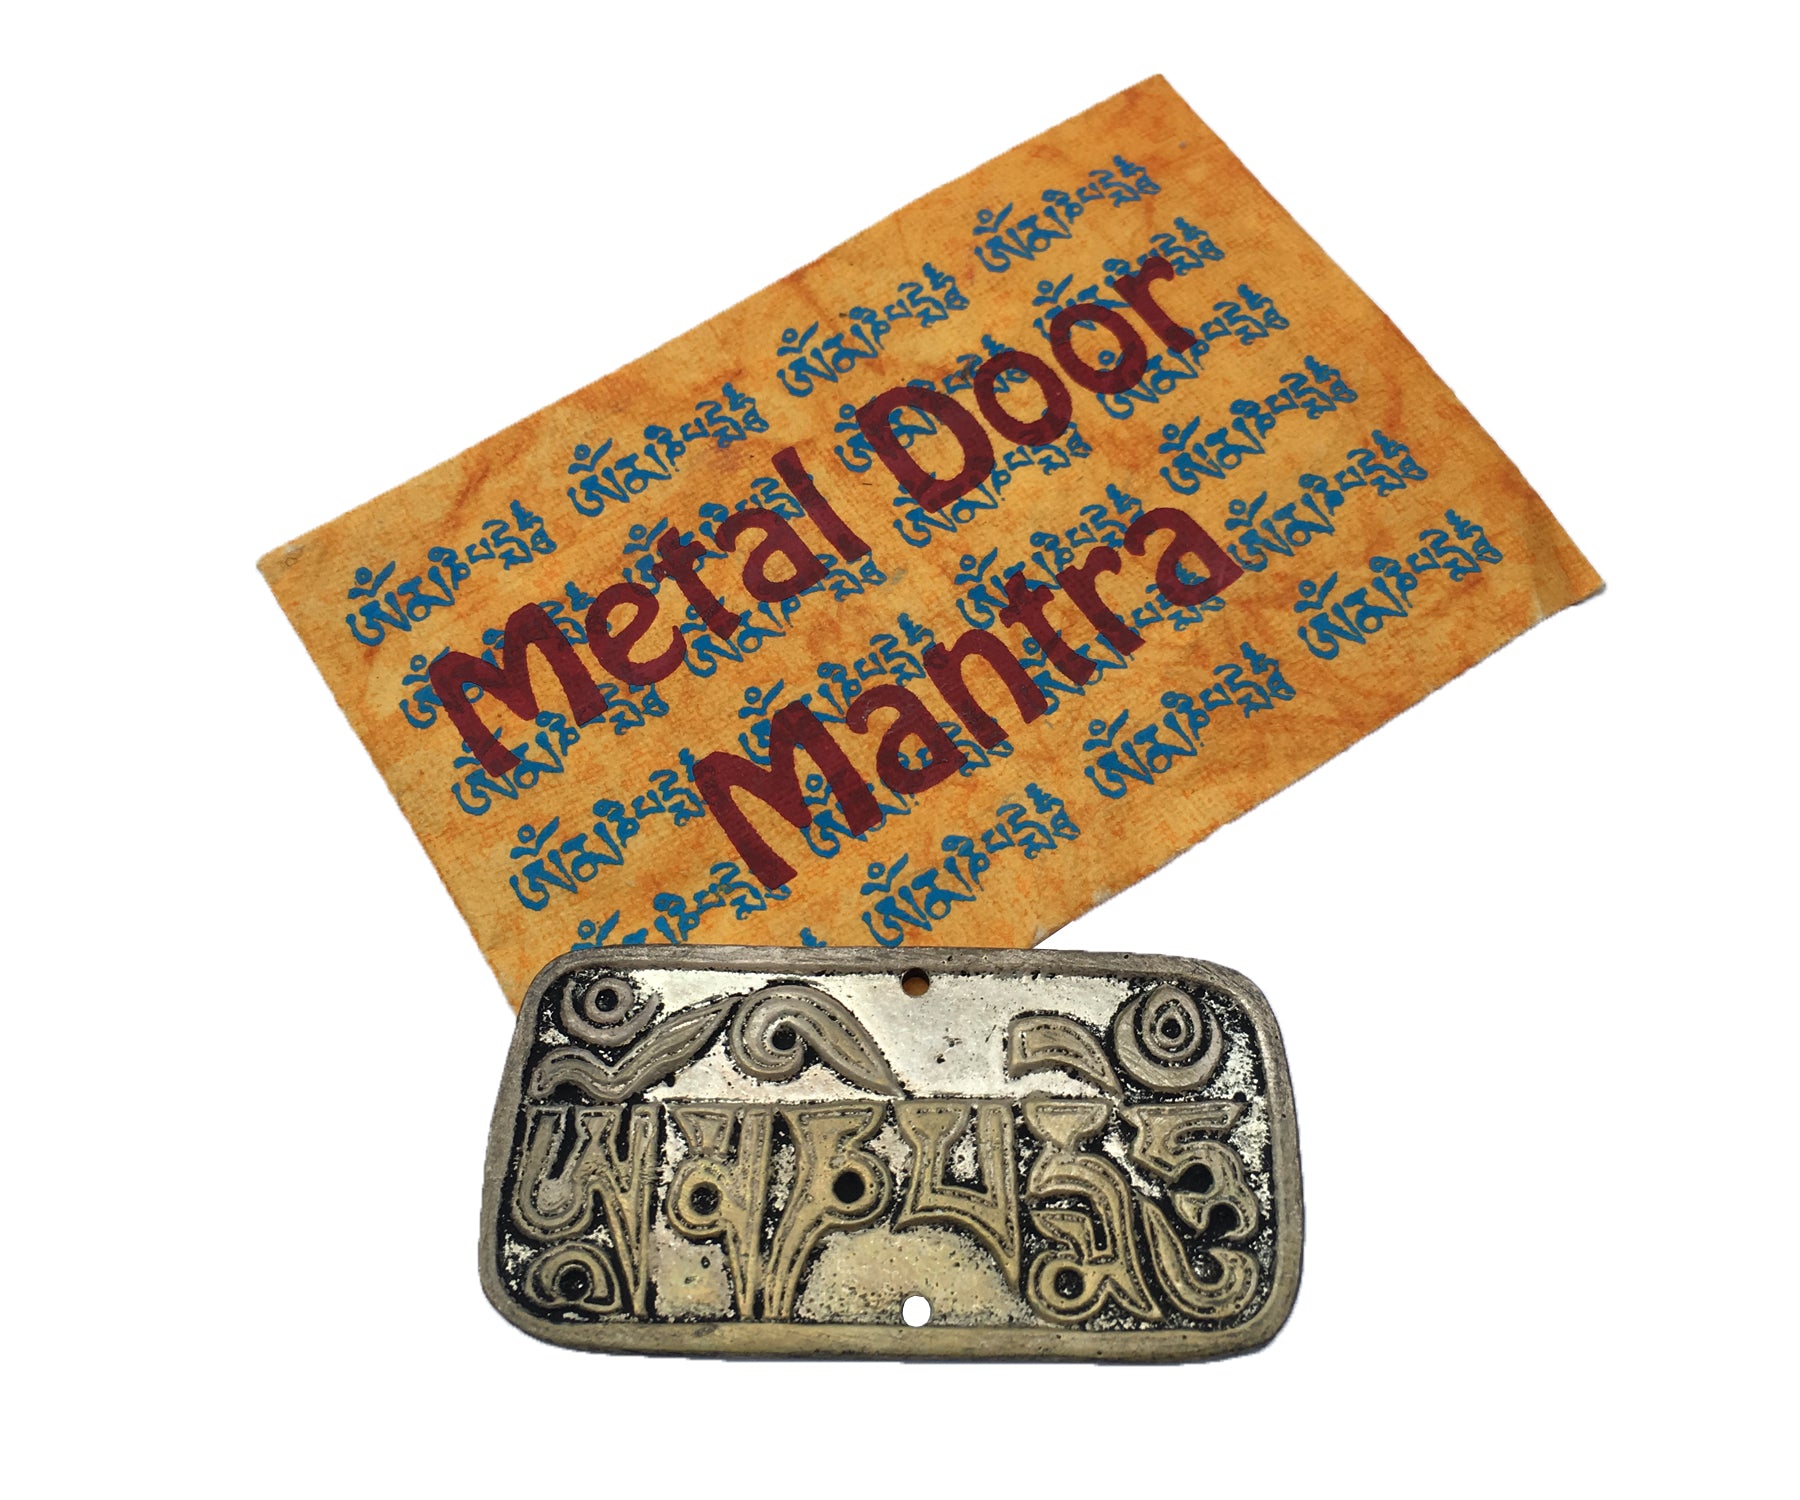 METAL DOOR MANTRA